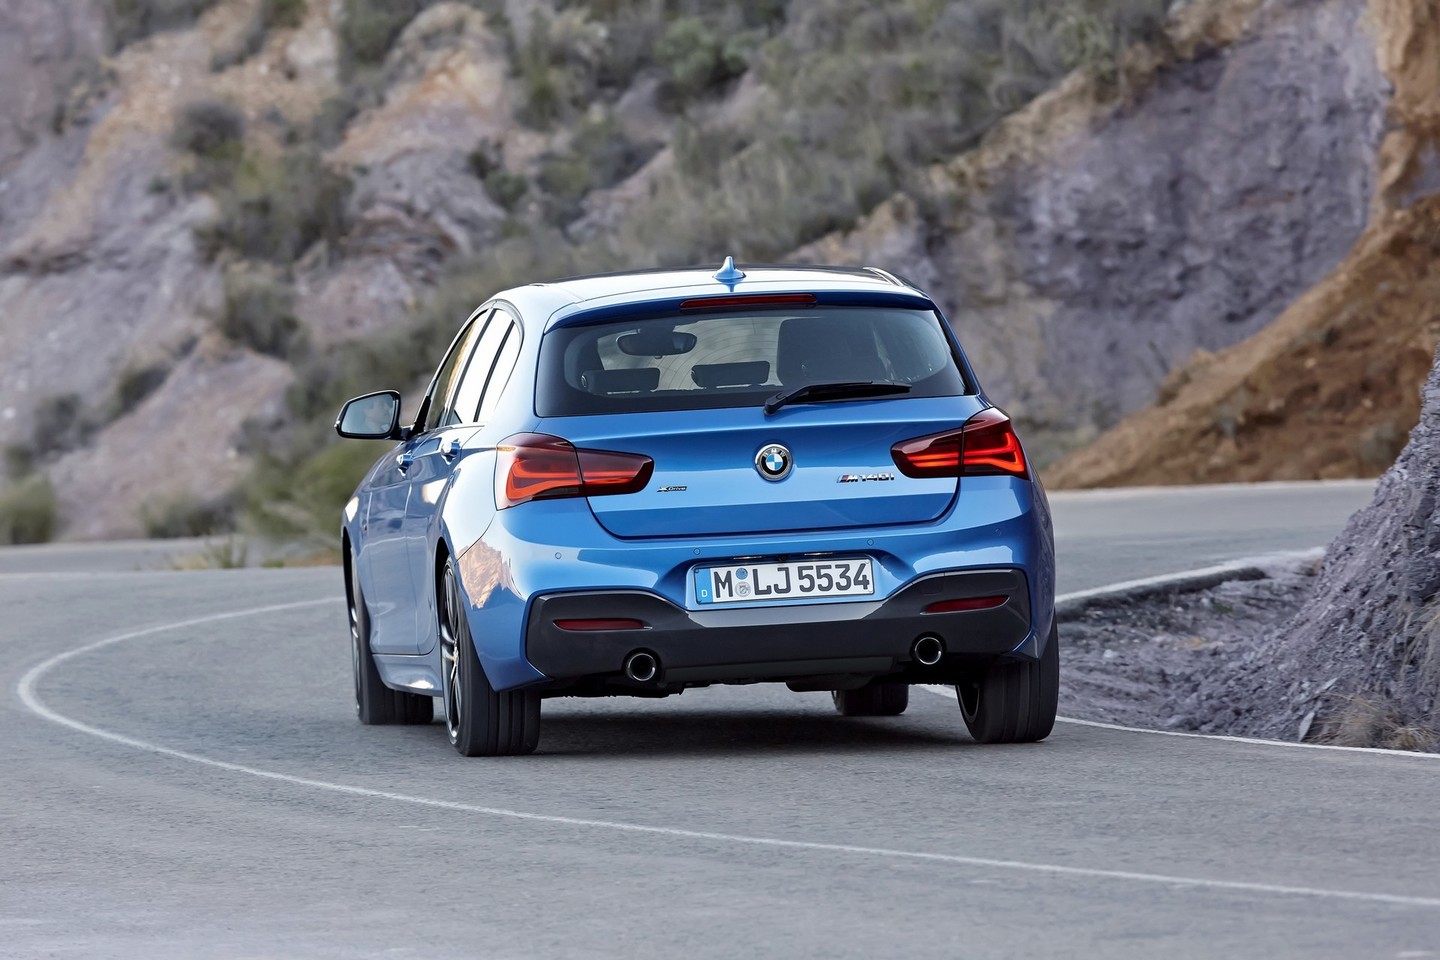 Antros kartos 1 serijos BMW pagaliau sulaukė atnaujinimo. <br>Gamintojo nuotr.